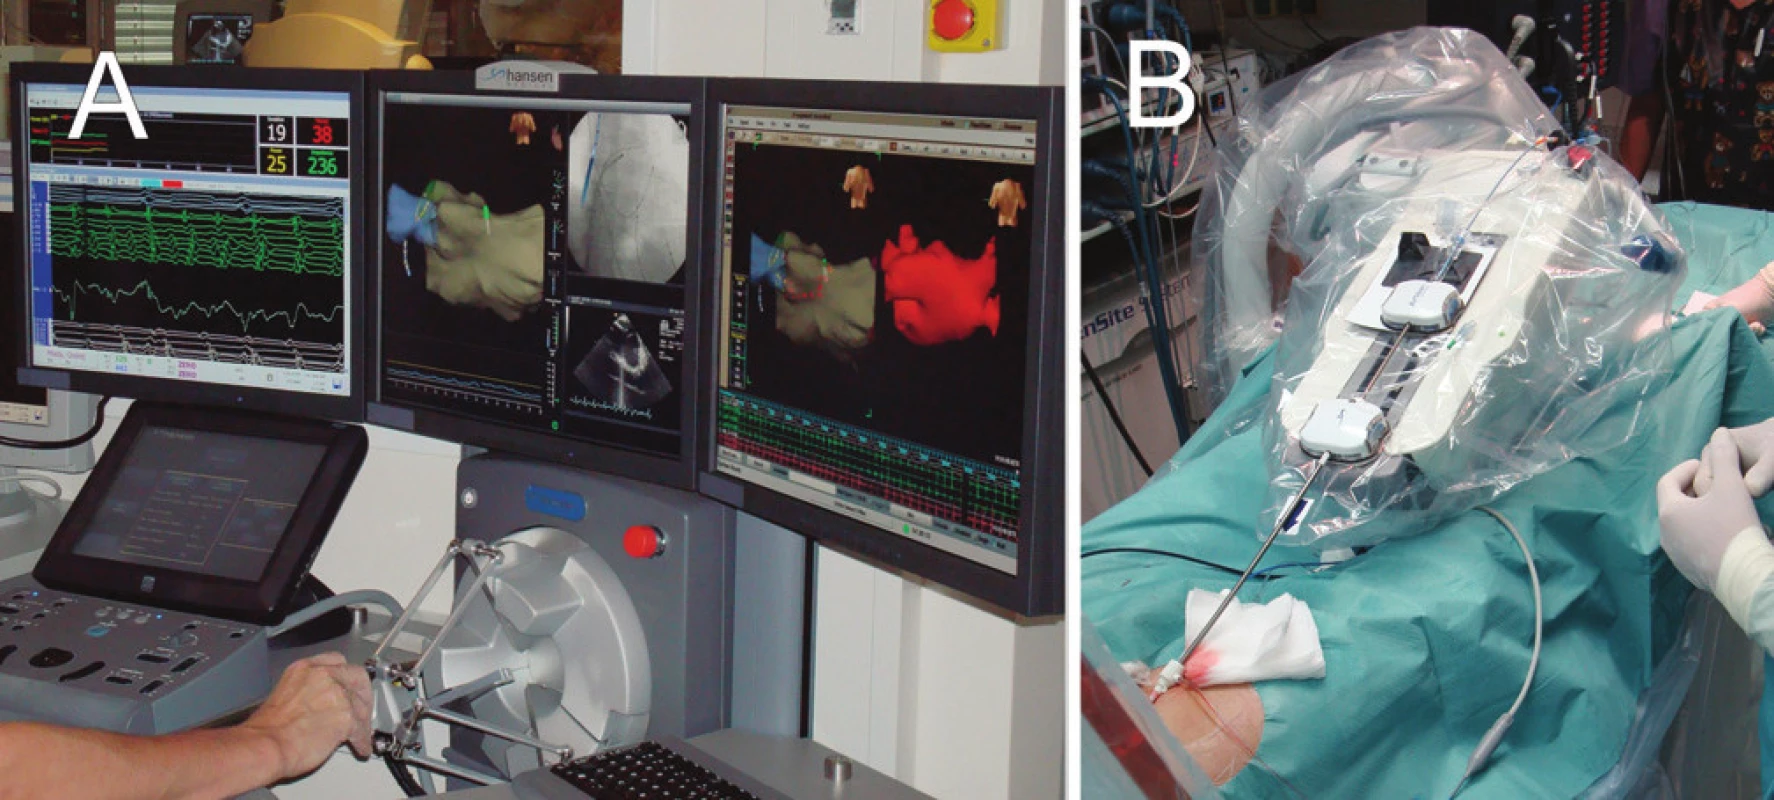 Systém pro robotickou ablaci (Hansen-Medical)
A. Ovládací panel robotického systému, který je umístěn mimo katetrizační sál.
B. Rameno robotického systému, které řídí pomocí zavaděčů pohyb ablačního katétru uvnitř srdce pacienta.